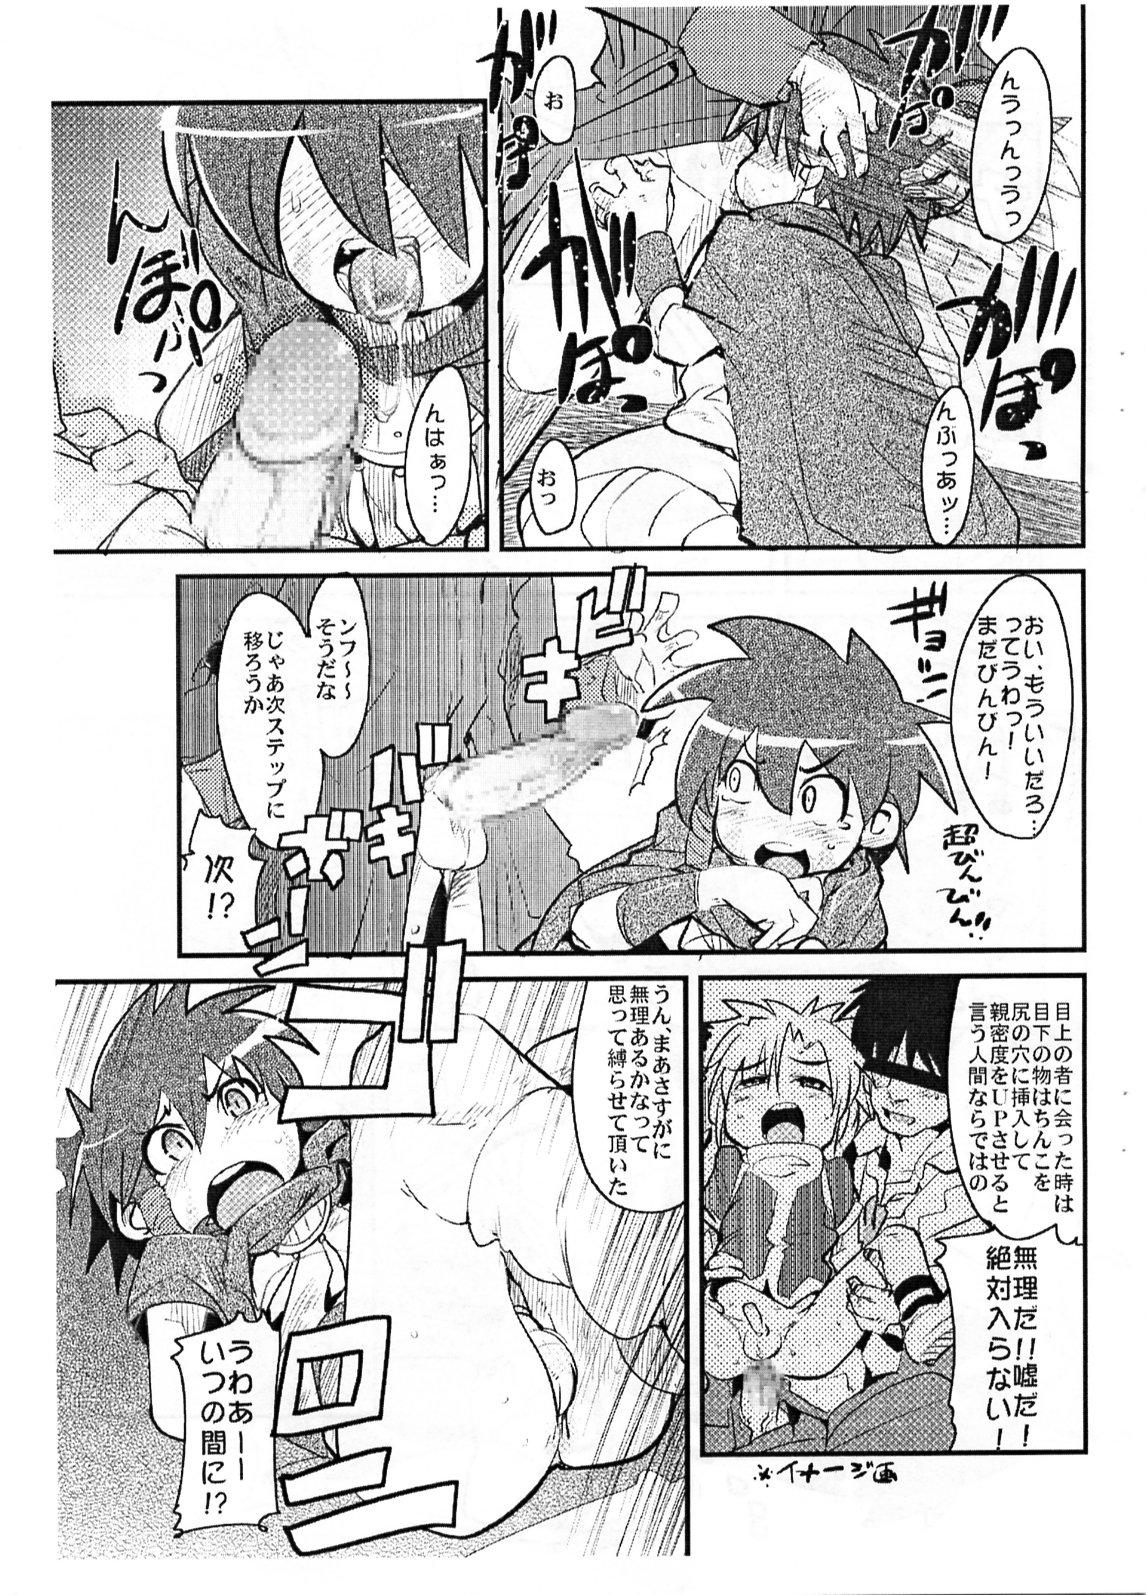 Tinytits Yaseiji ni iroiro oshieru hon nano da - Digimon savers Bed - Page 6